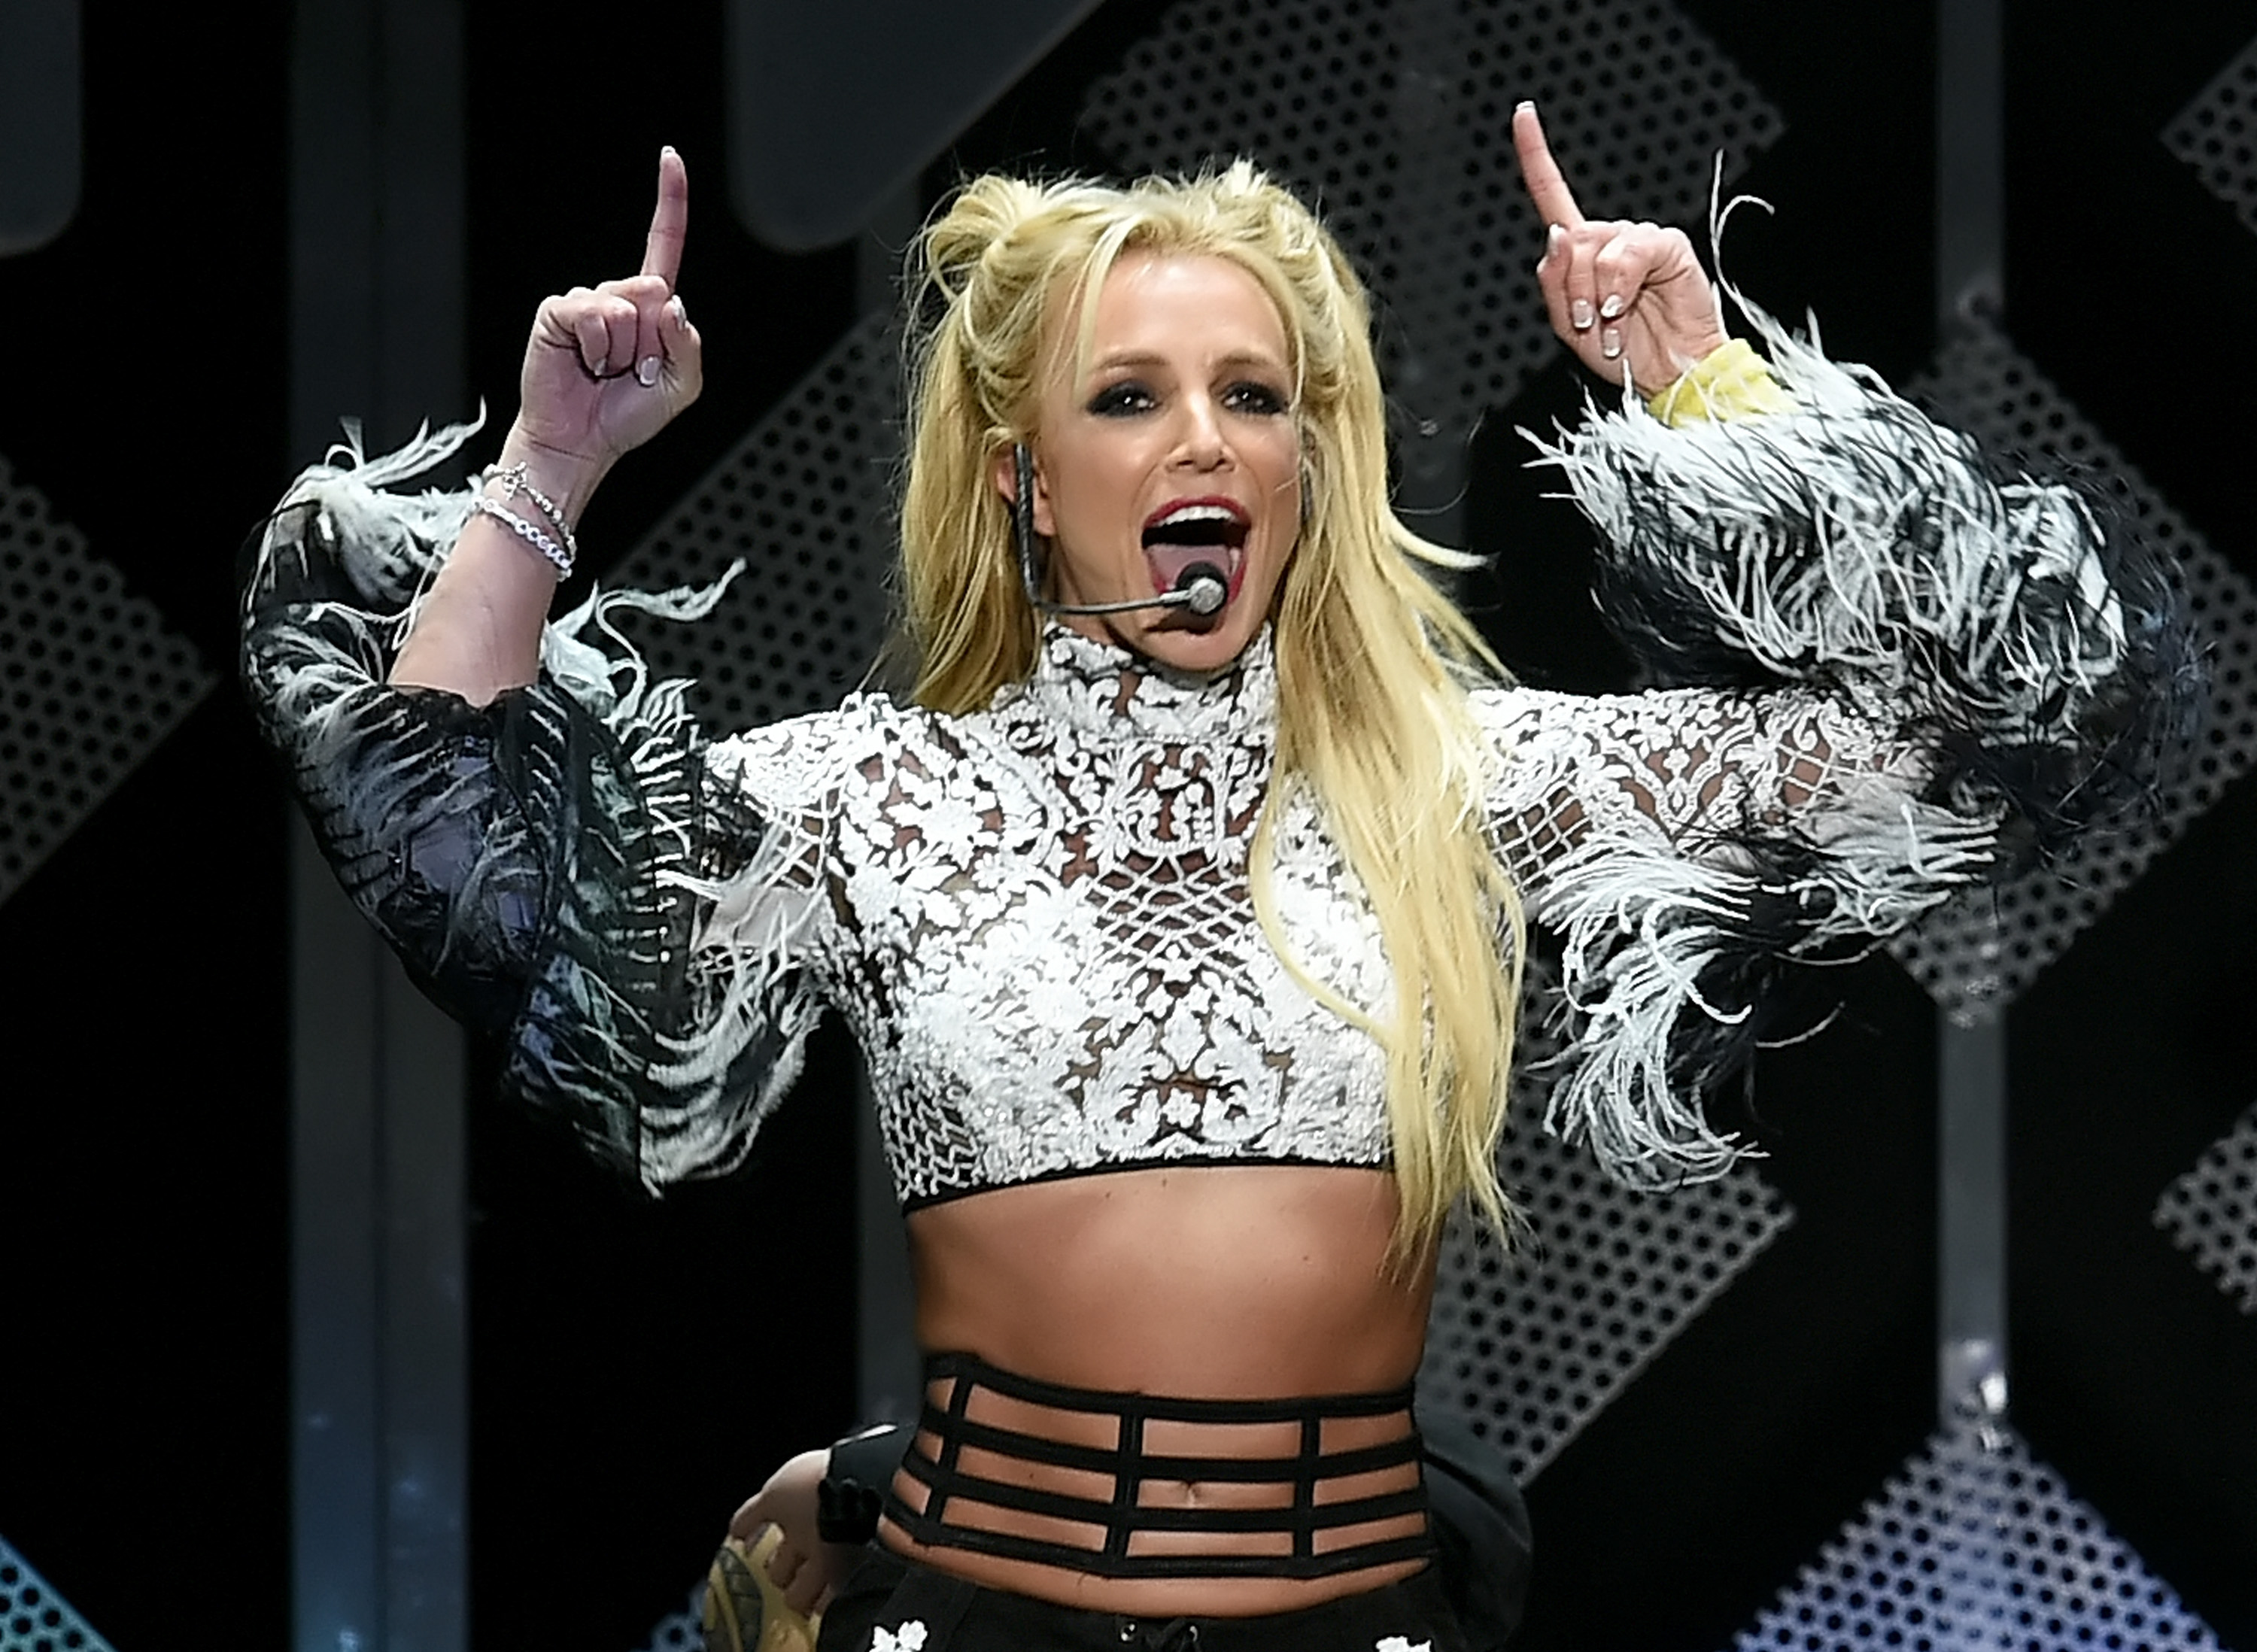 13 év után megszüntették Britney Spears gondnokságát